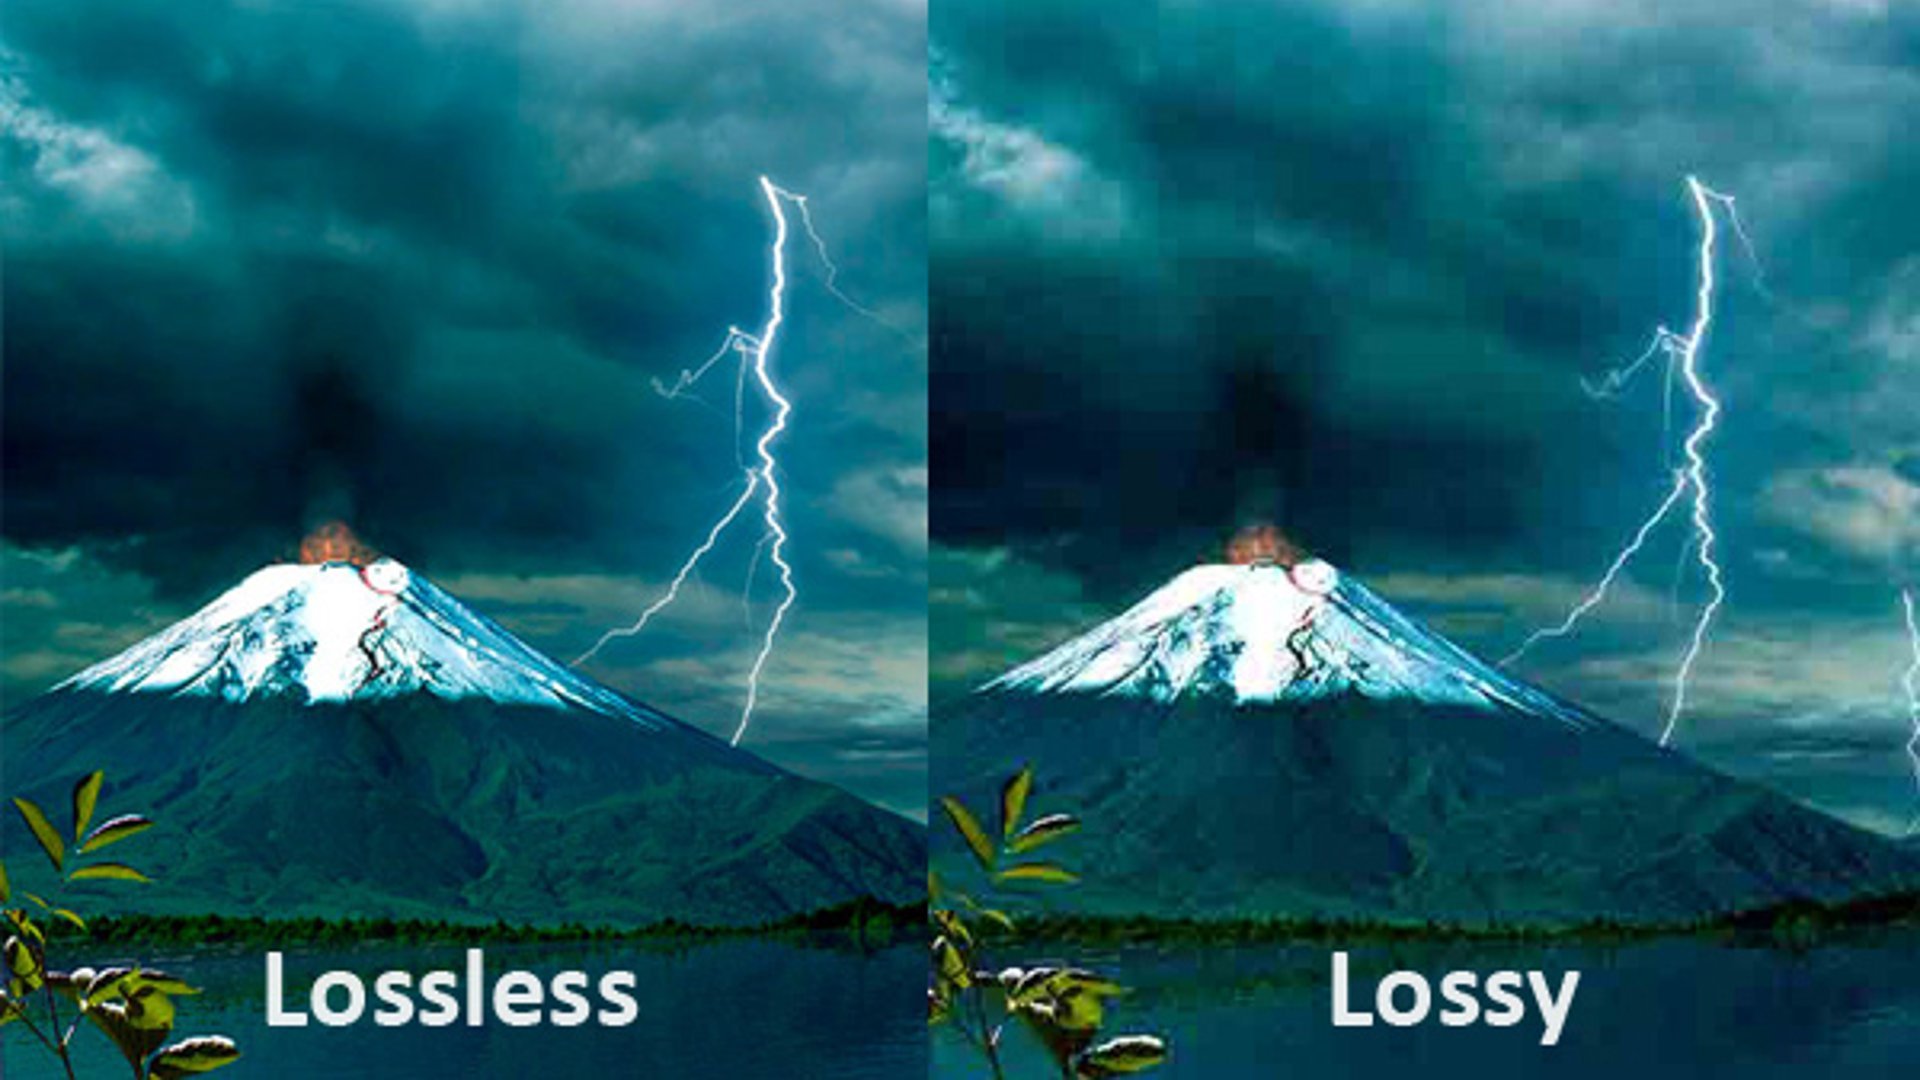 Exemplo ilustrativo de vídeo em um formato sem perdas e com perdas, respectivamente. (Fonte: Prime Inspiration / Reprodução)